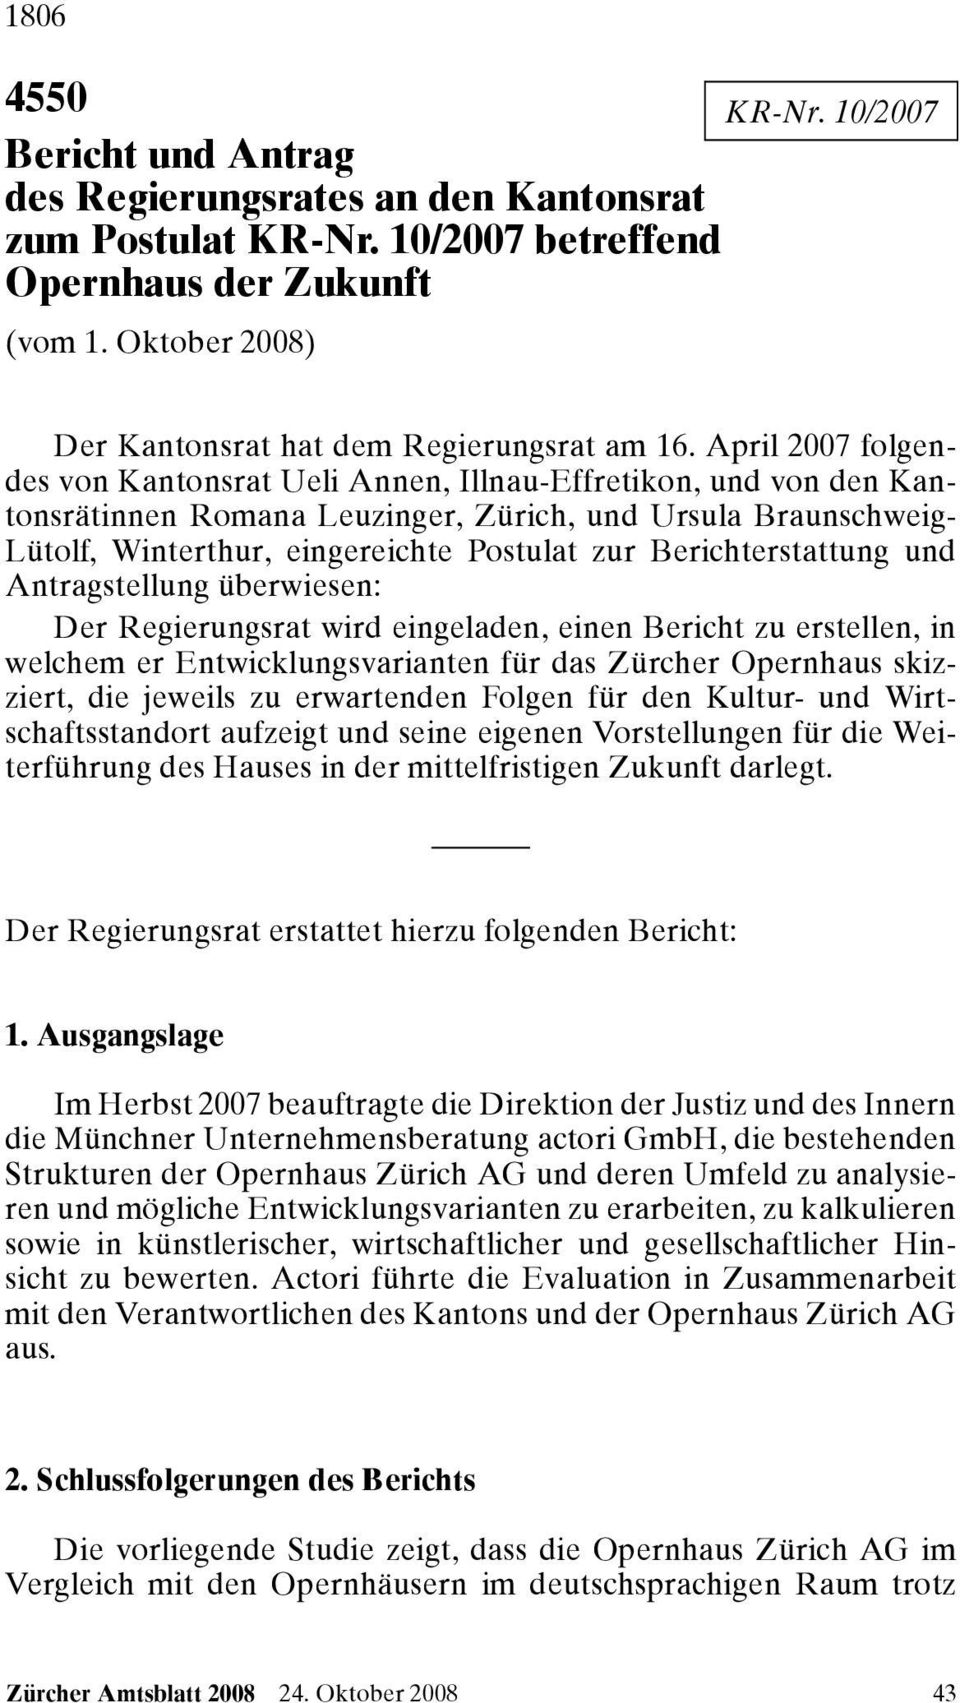 April 2007 folgendes von Kantonsrat Ueli Annen, Illnau-Effretikon, und von den Kantonsrätinnen Romana Leuzinger, Zürich, und Ursula Braunschweig- Lütolf, Winterthur, eingereichte Postulat zur